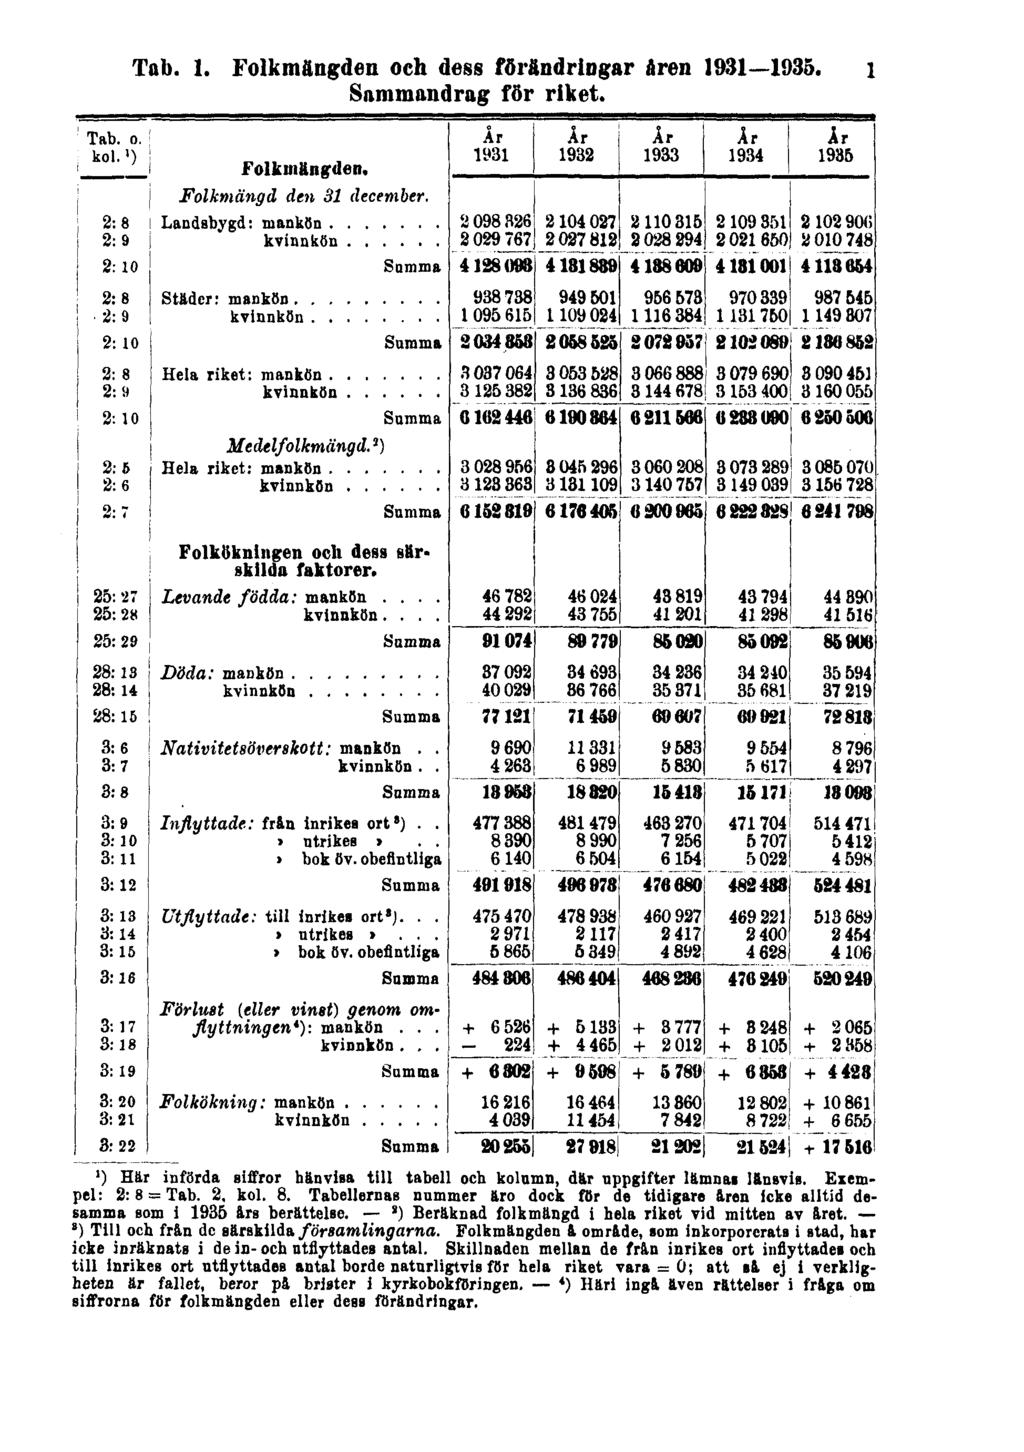 Tab. 1. Folkmängden och dess förändringar åren 1931 1935. 1 Sammandrag för riket. 1) Här införda siffror hänvisa till tabell och kolumn, där uppgifter lämnas länsvis. Exempel: 2: 8 